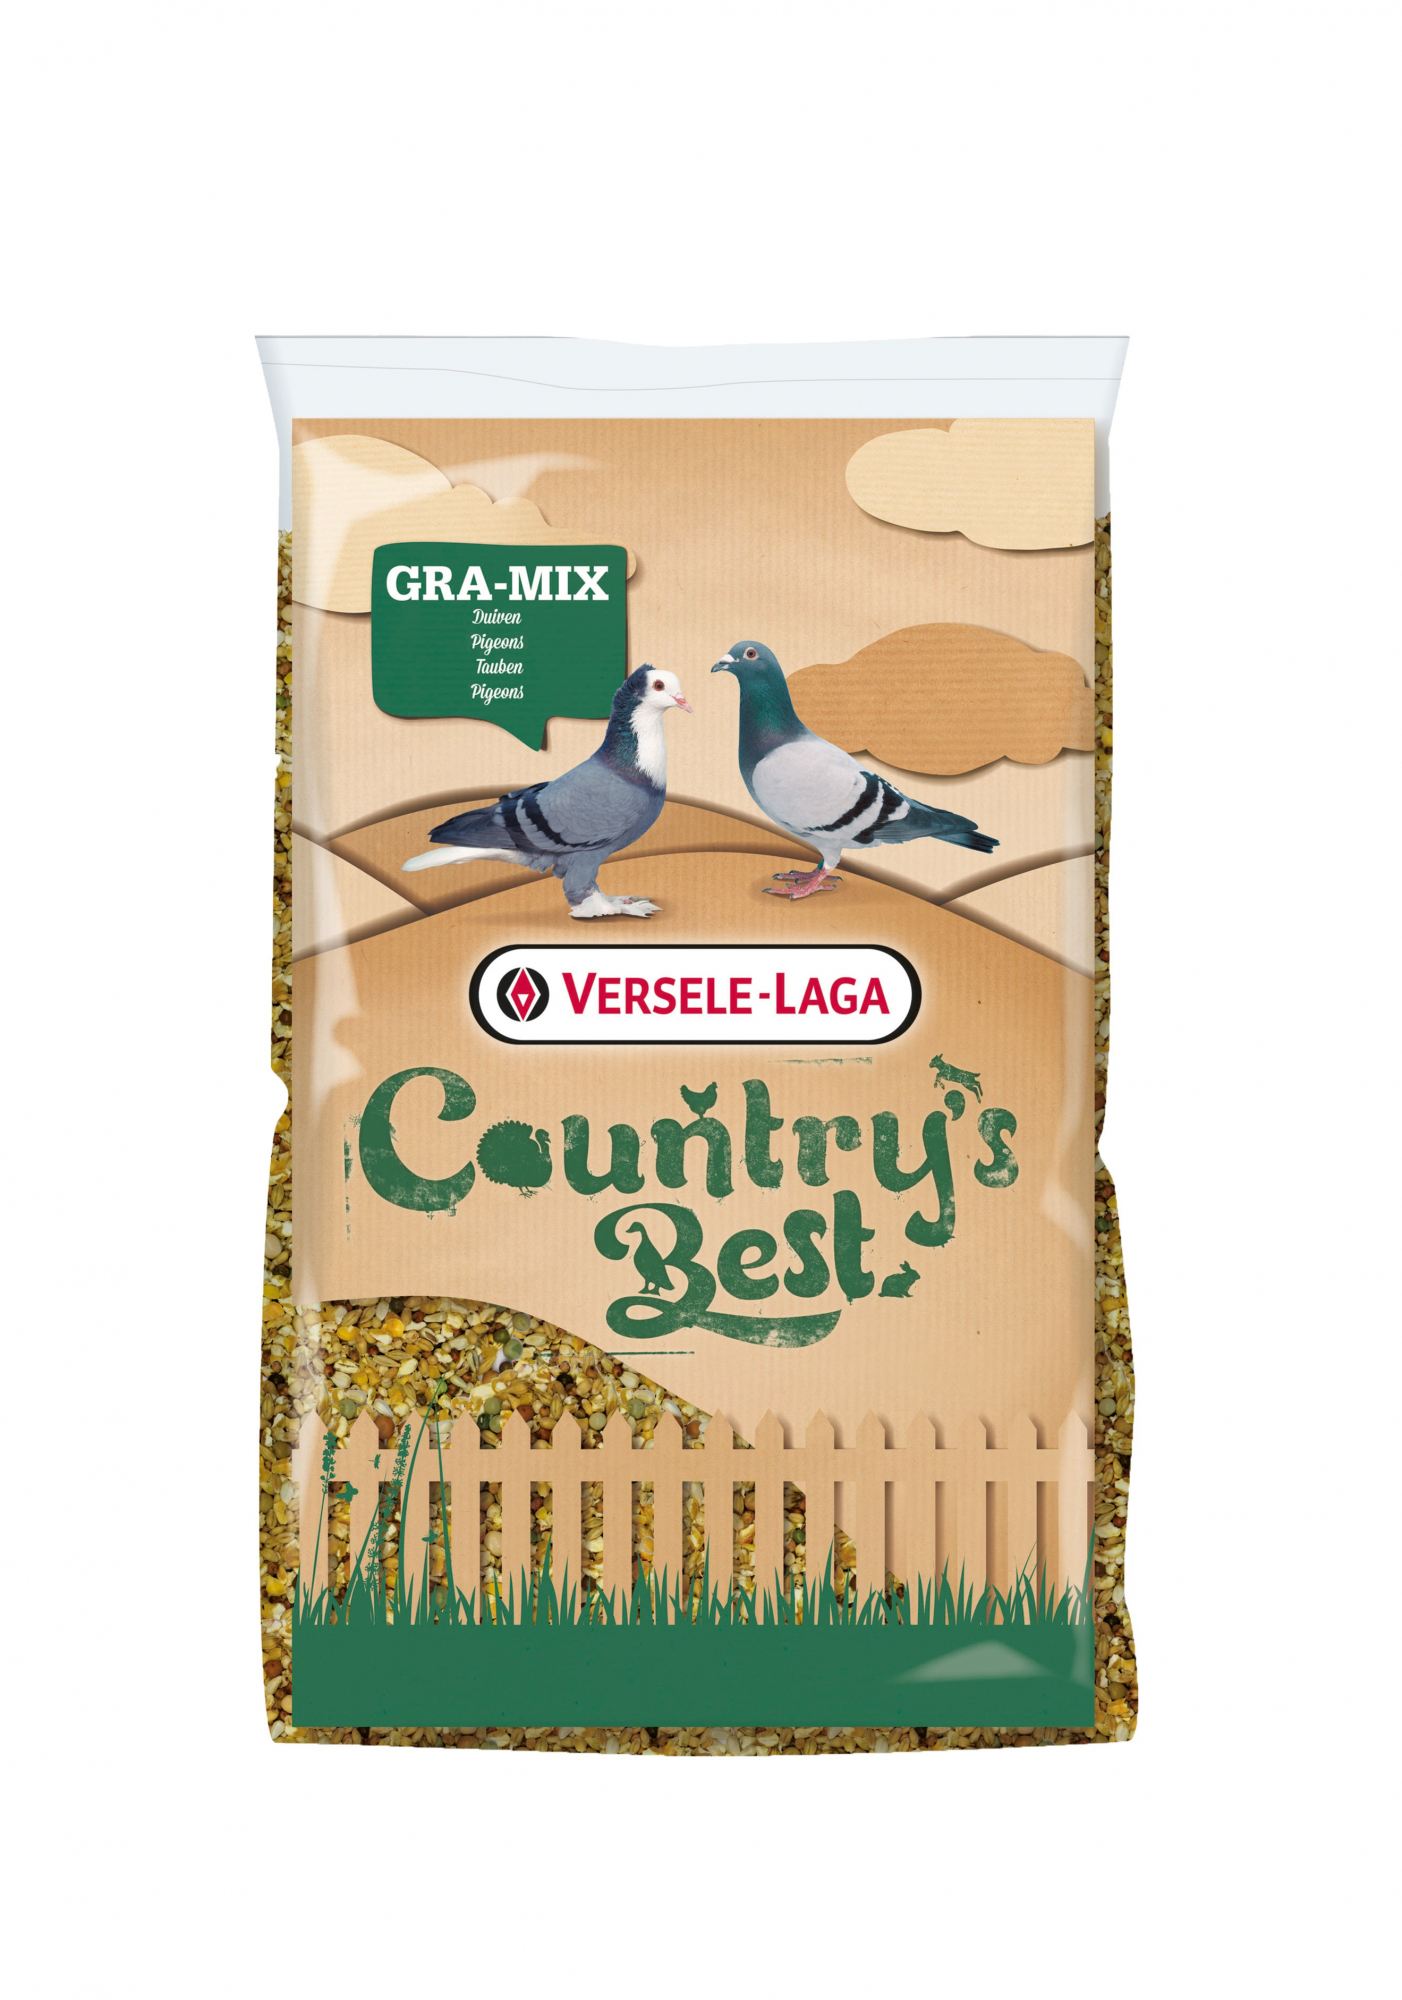 Gra-Mix Pombos Criação Eco Country's Best Mistura de sementes para pombos durante o período de criação